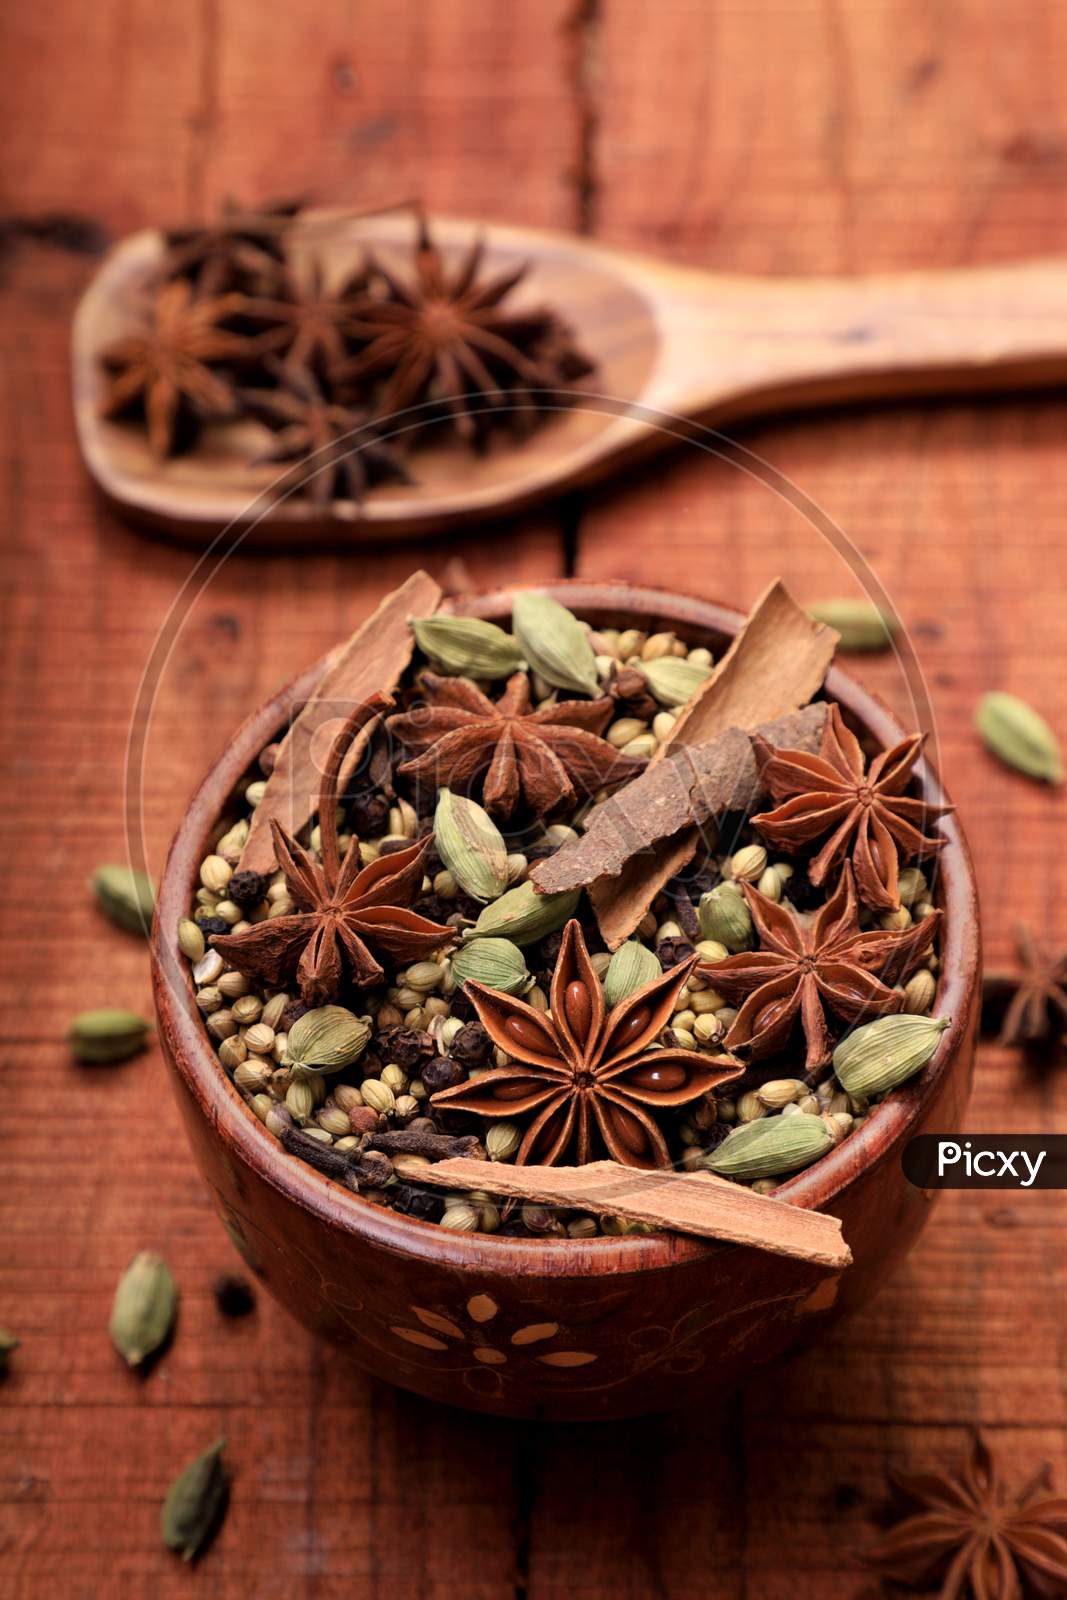 Indian Spices & Herbs Star Anise, Cardamom, Cinnamon, Etc